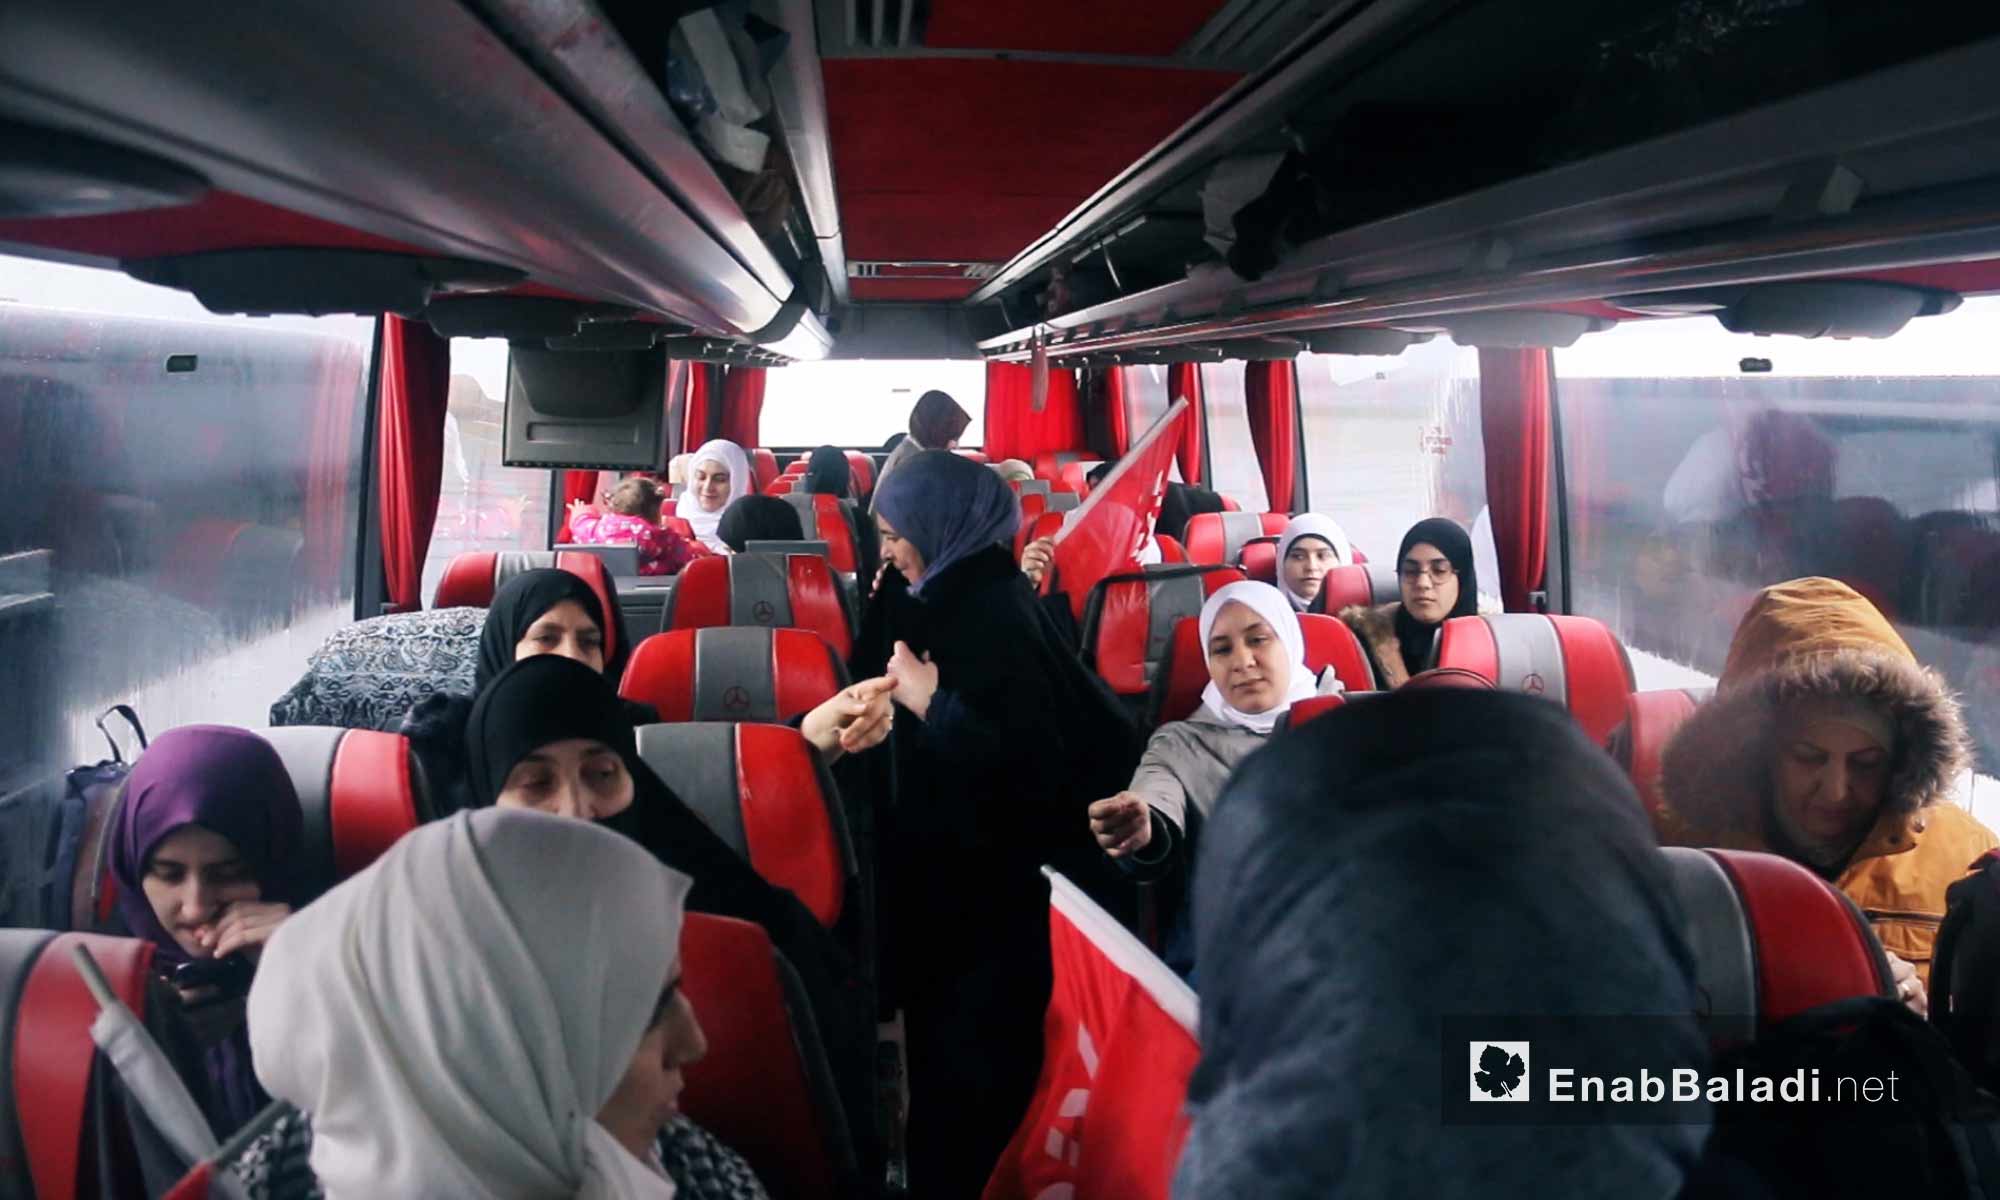 مشاركات في حافلة تجهيزًا لانطلاق قافلة "َالضمير" لدعم المعتقلات السوريات في اسطنبول - 6 آذار 2018 (عنب بلدي) 